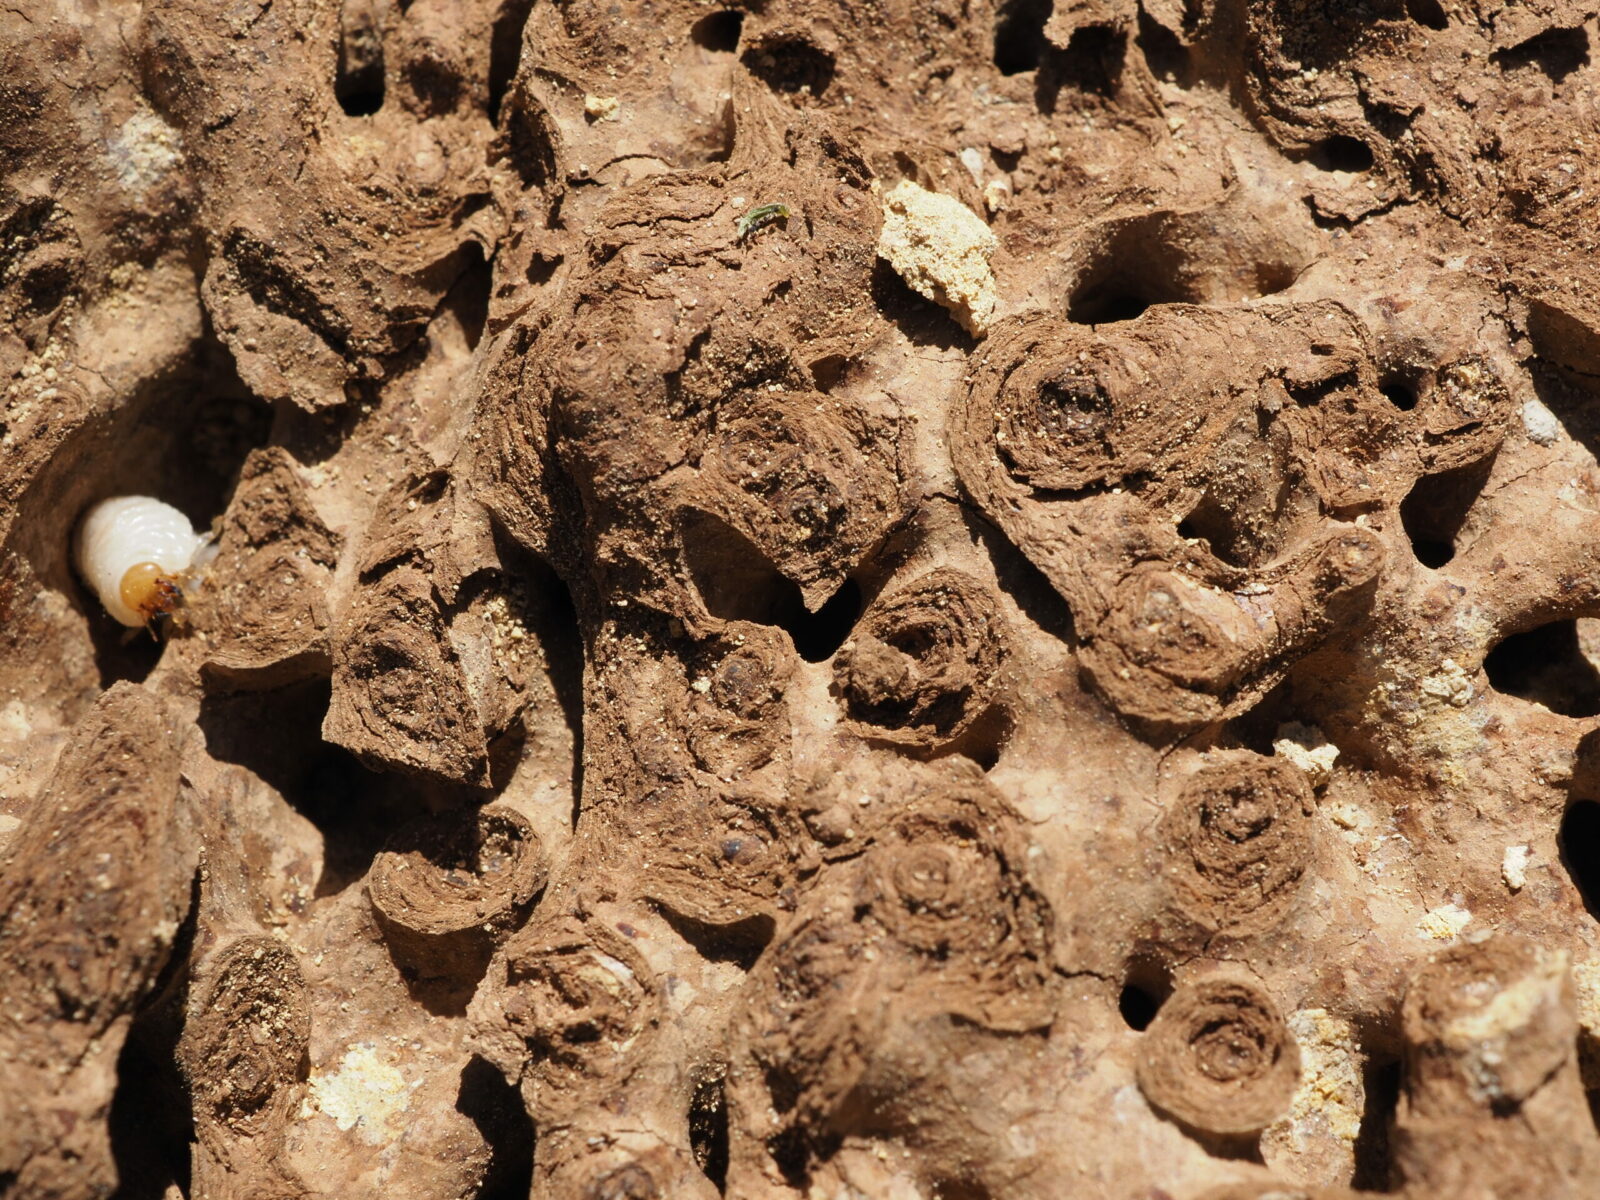 Nest of Coptotermes lacteus (termite nest) - internal structure